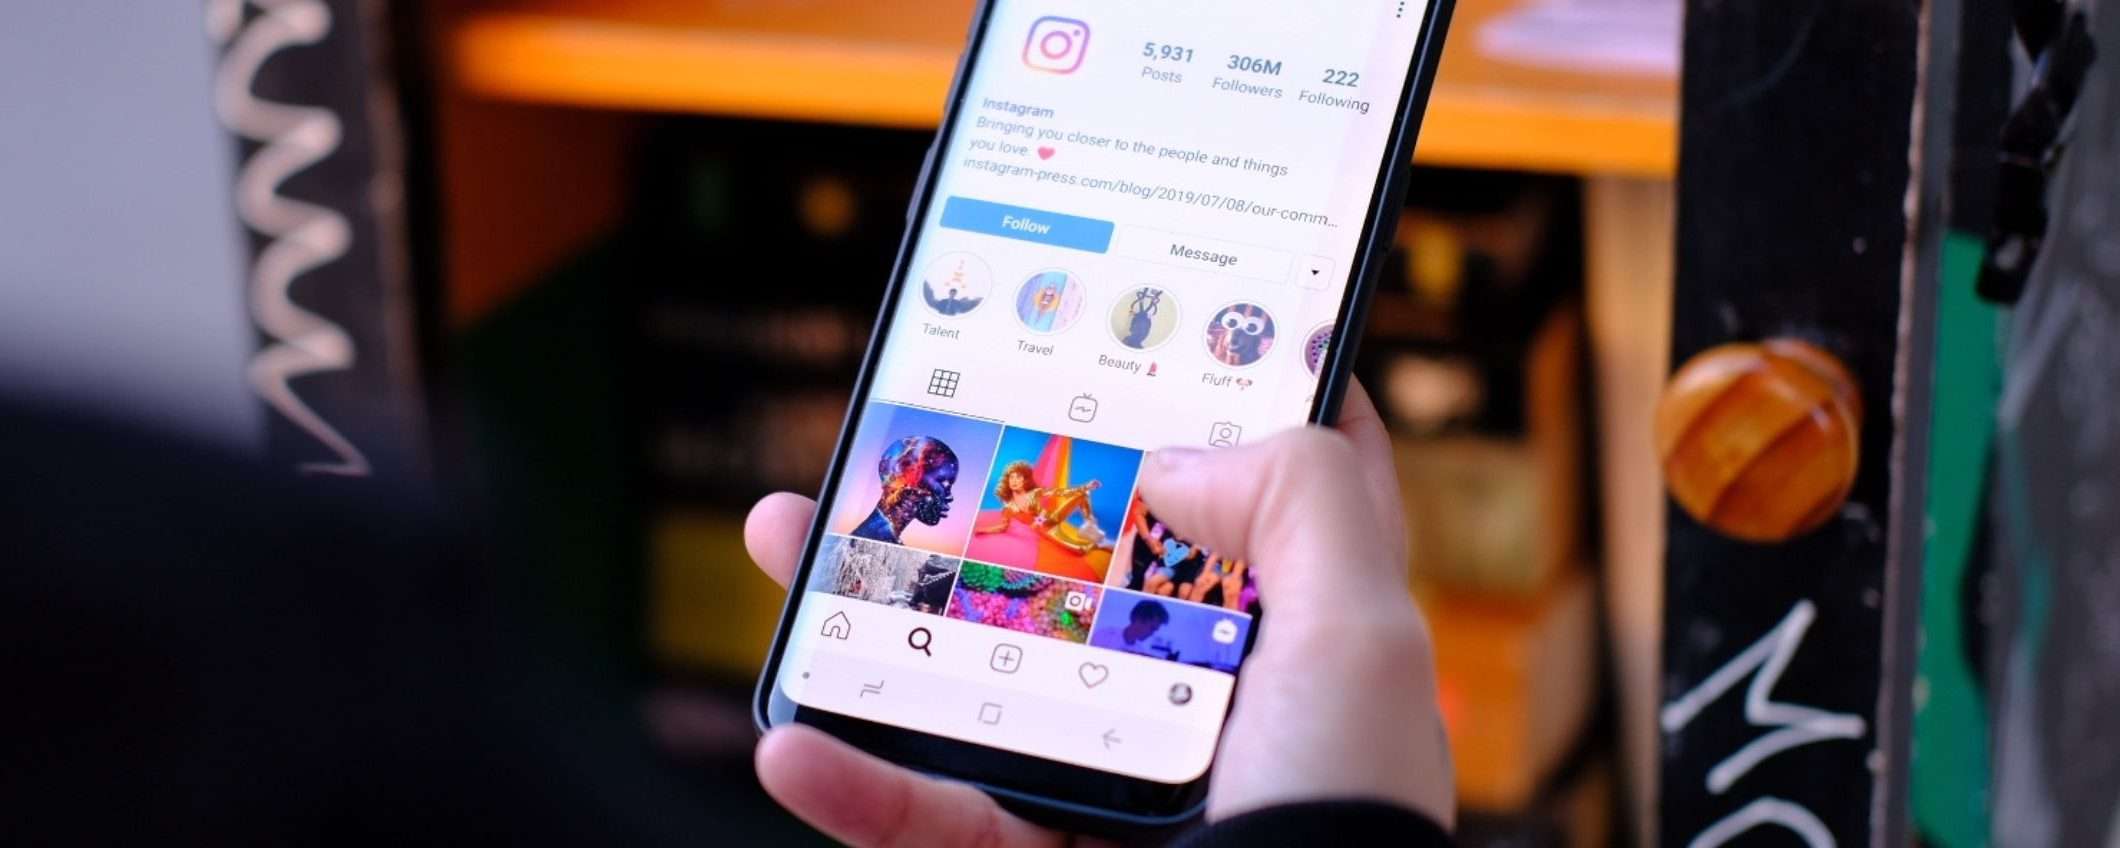 Instagram mostrerà sempre meno contenuti agli adolescenti